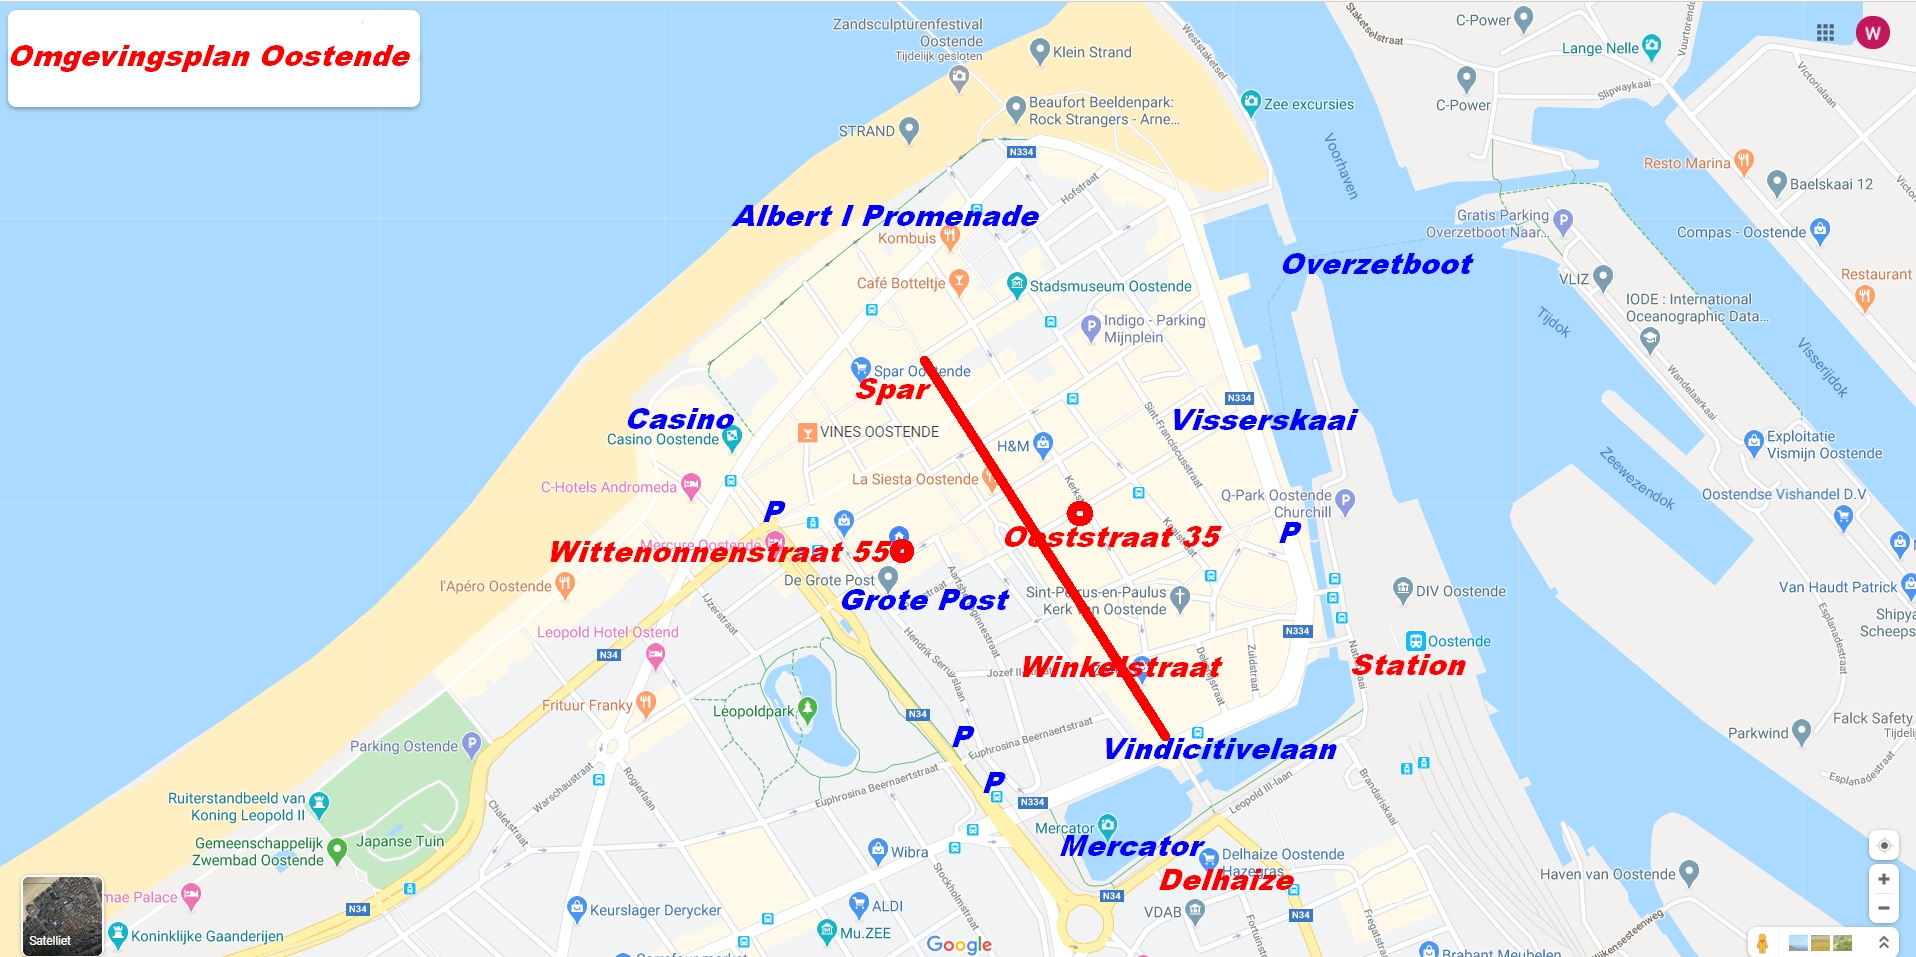 Omgevingsplan Oostende